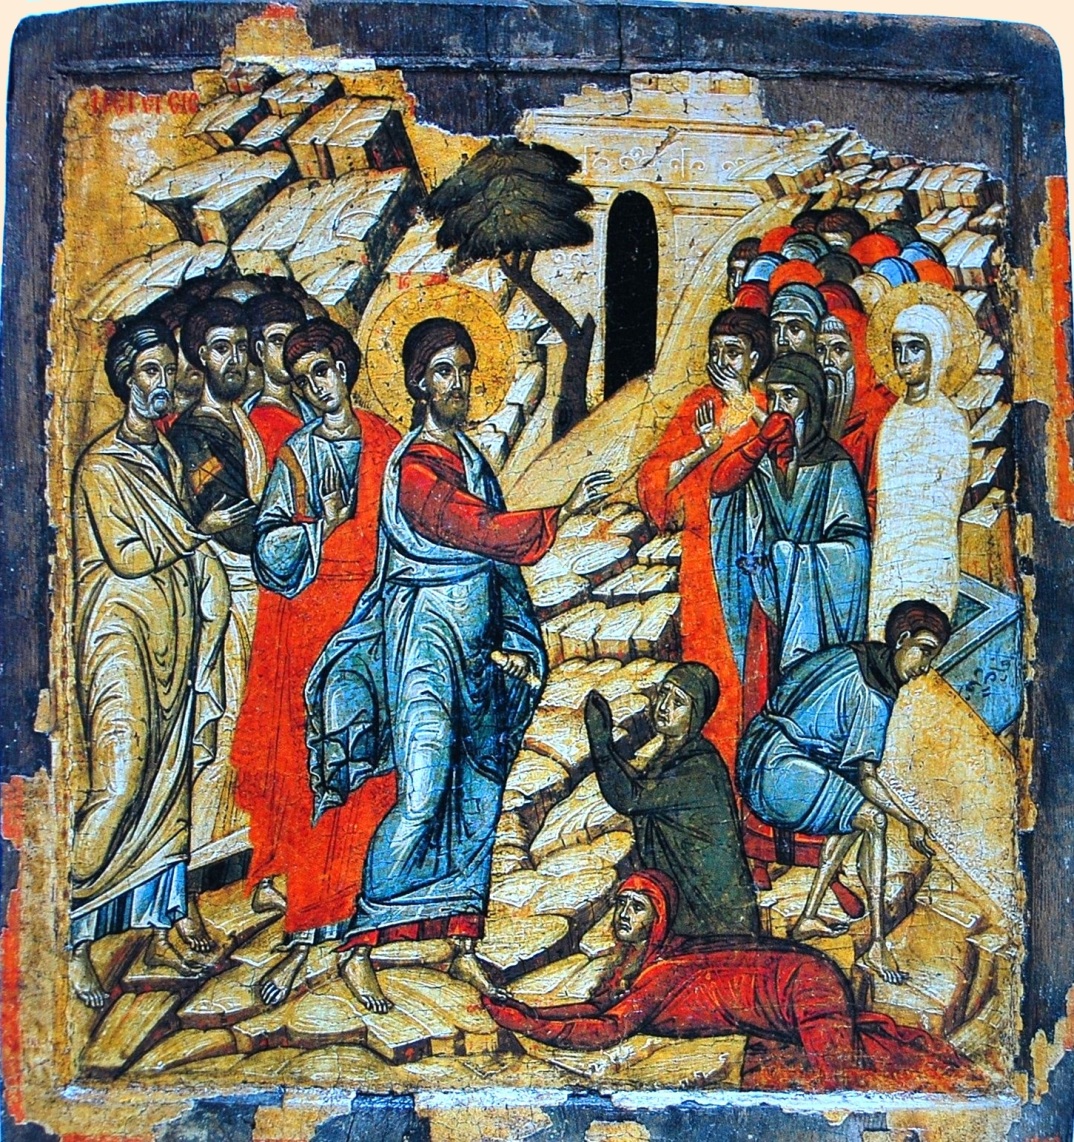 Воскрешение праведного Лазаря. У ног Христа  - праведные Марфа и Мария. Икона из монастыря святой Екатерины (Синай)